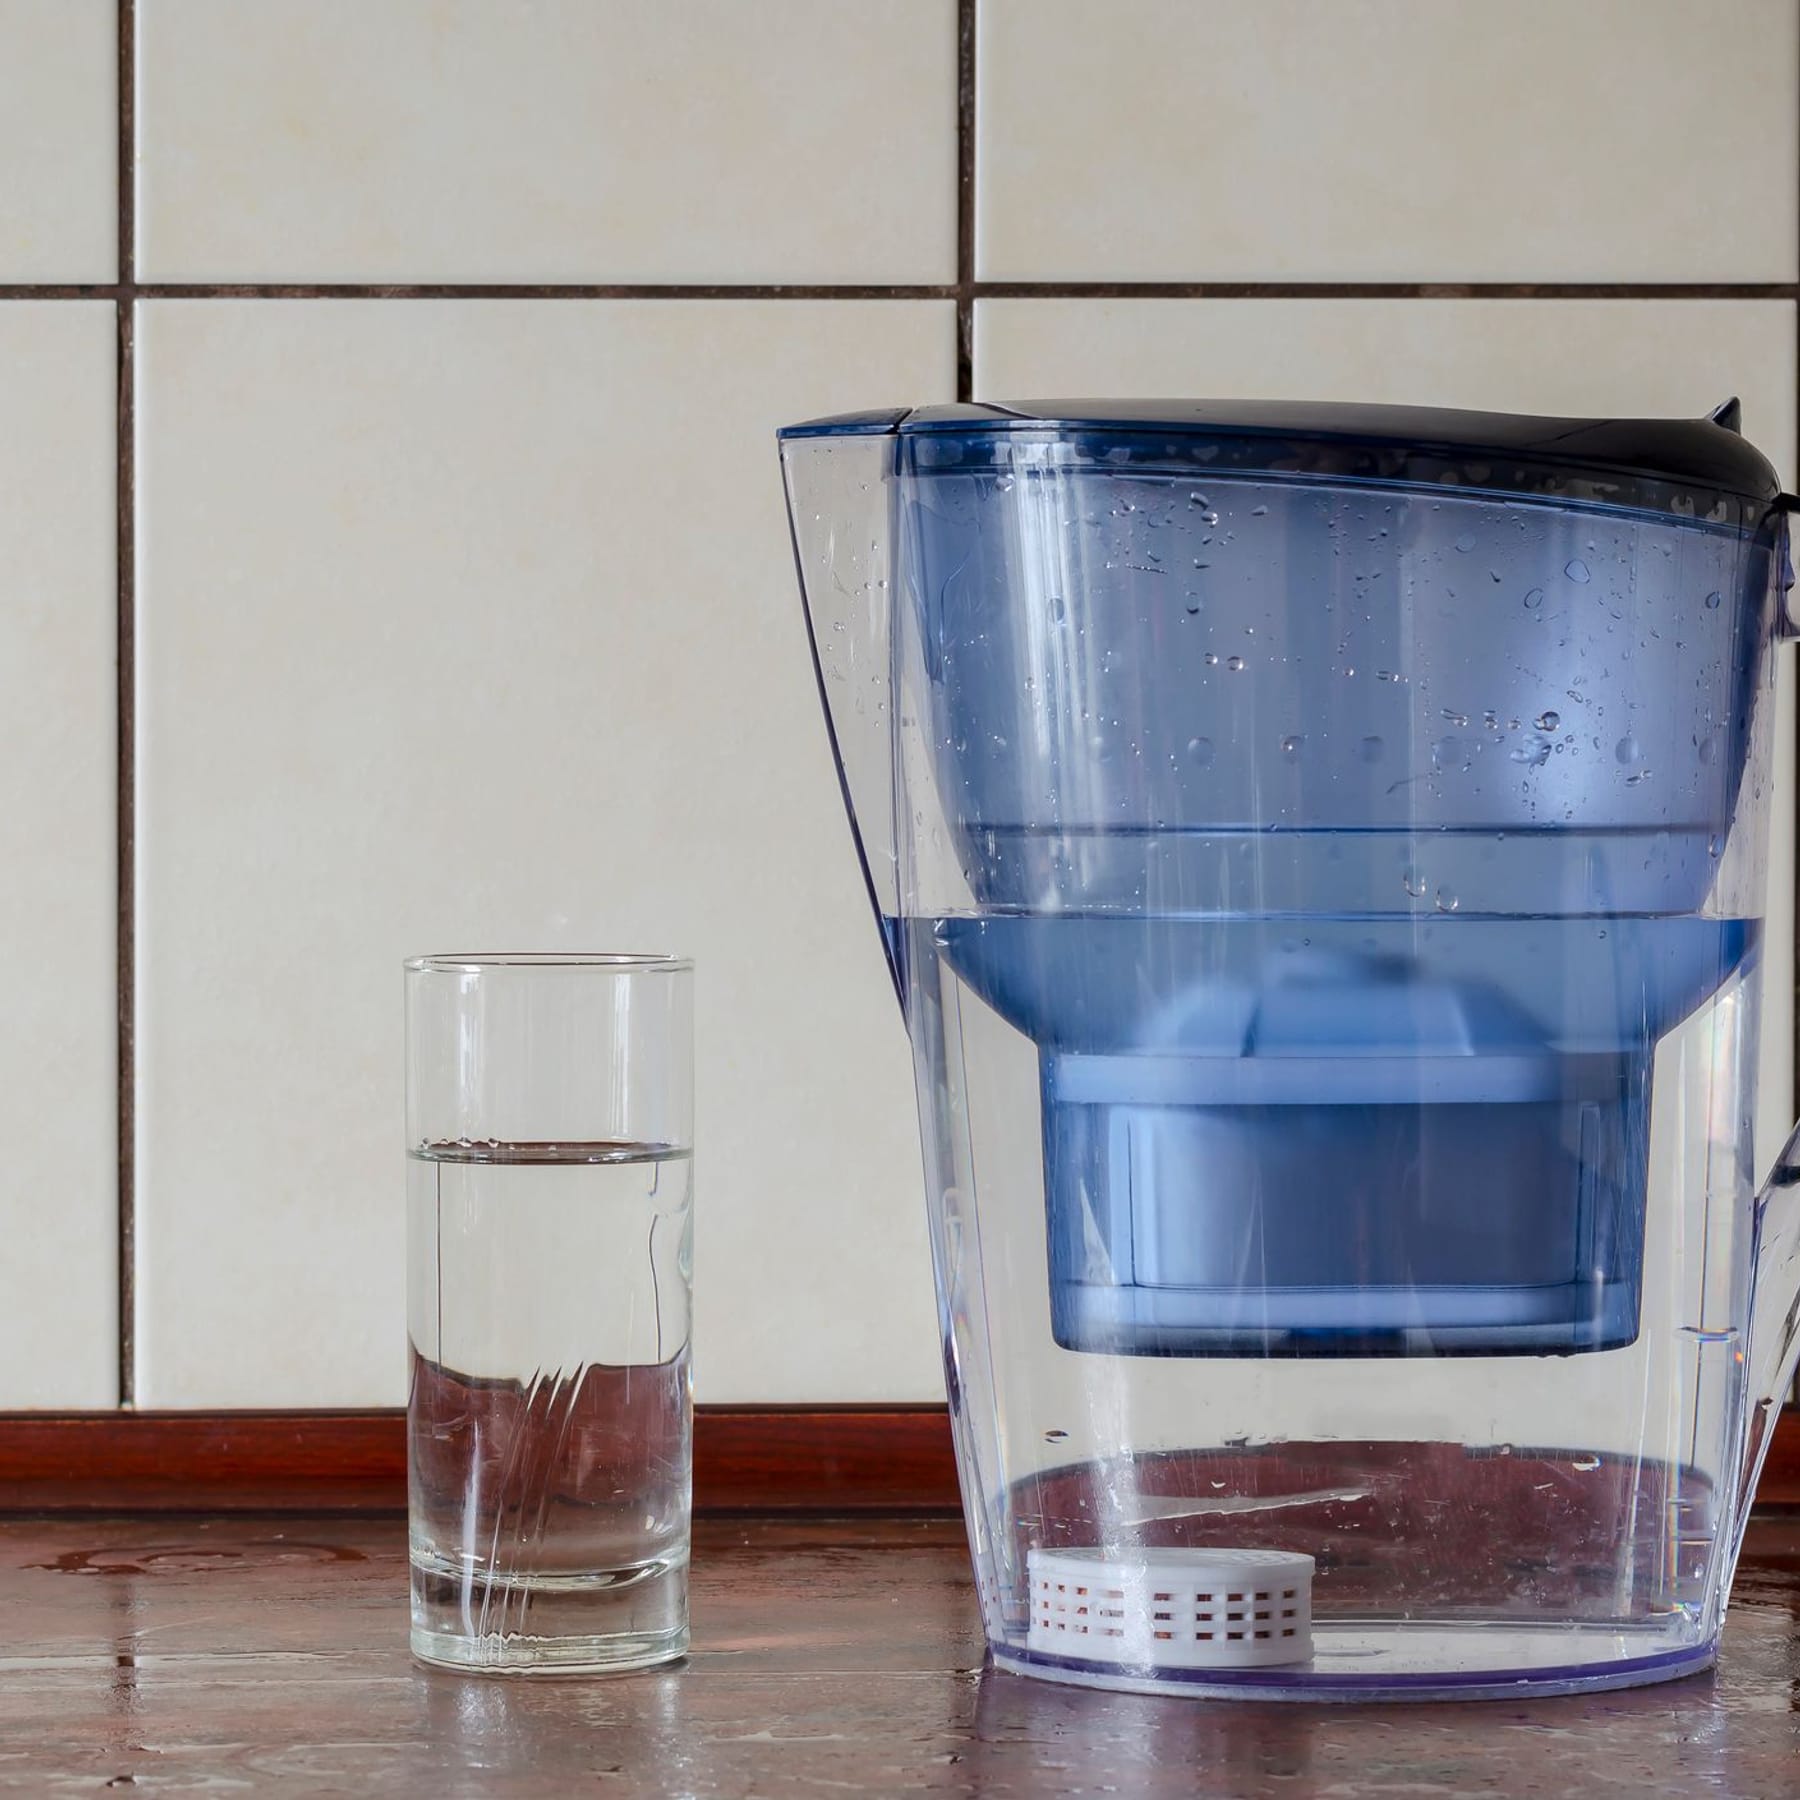 Stiftung Warentest: Etliche Bakterien in Wasserfiltern – sie können krank  machen